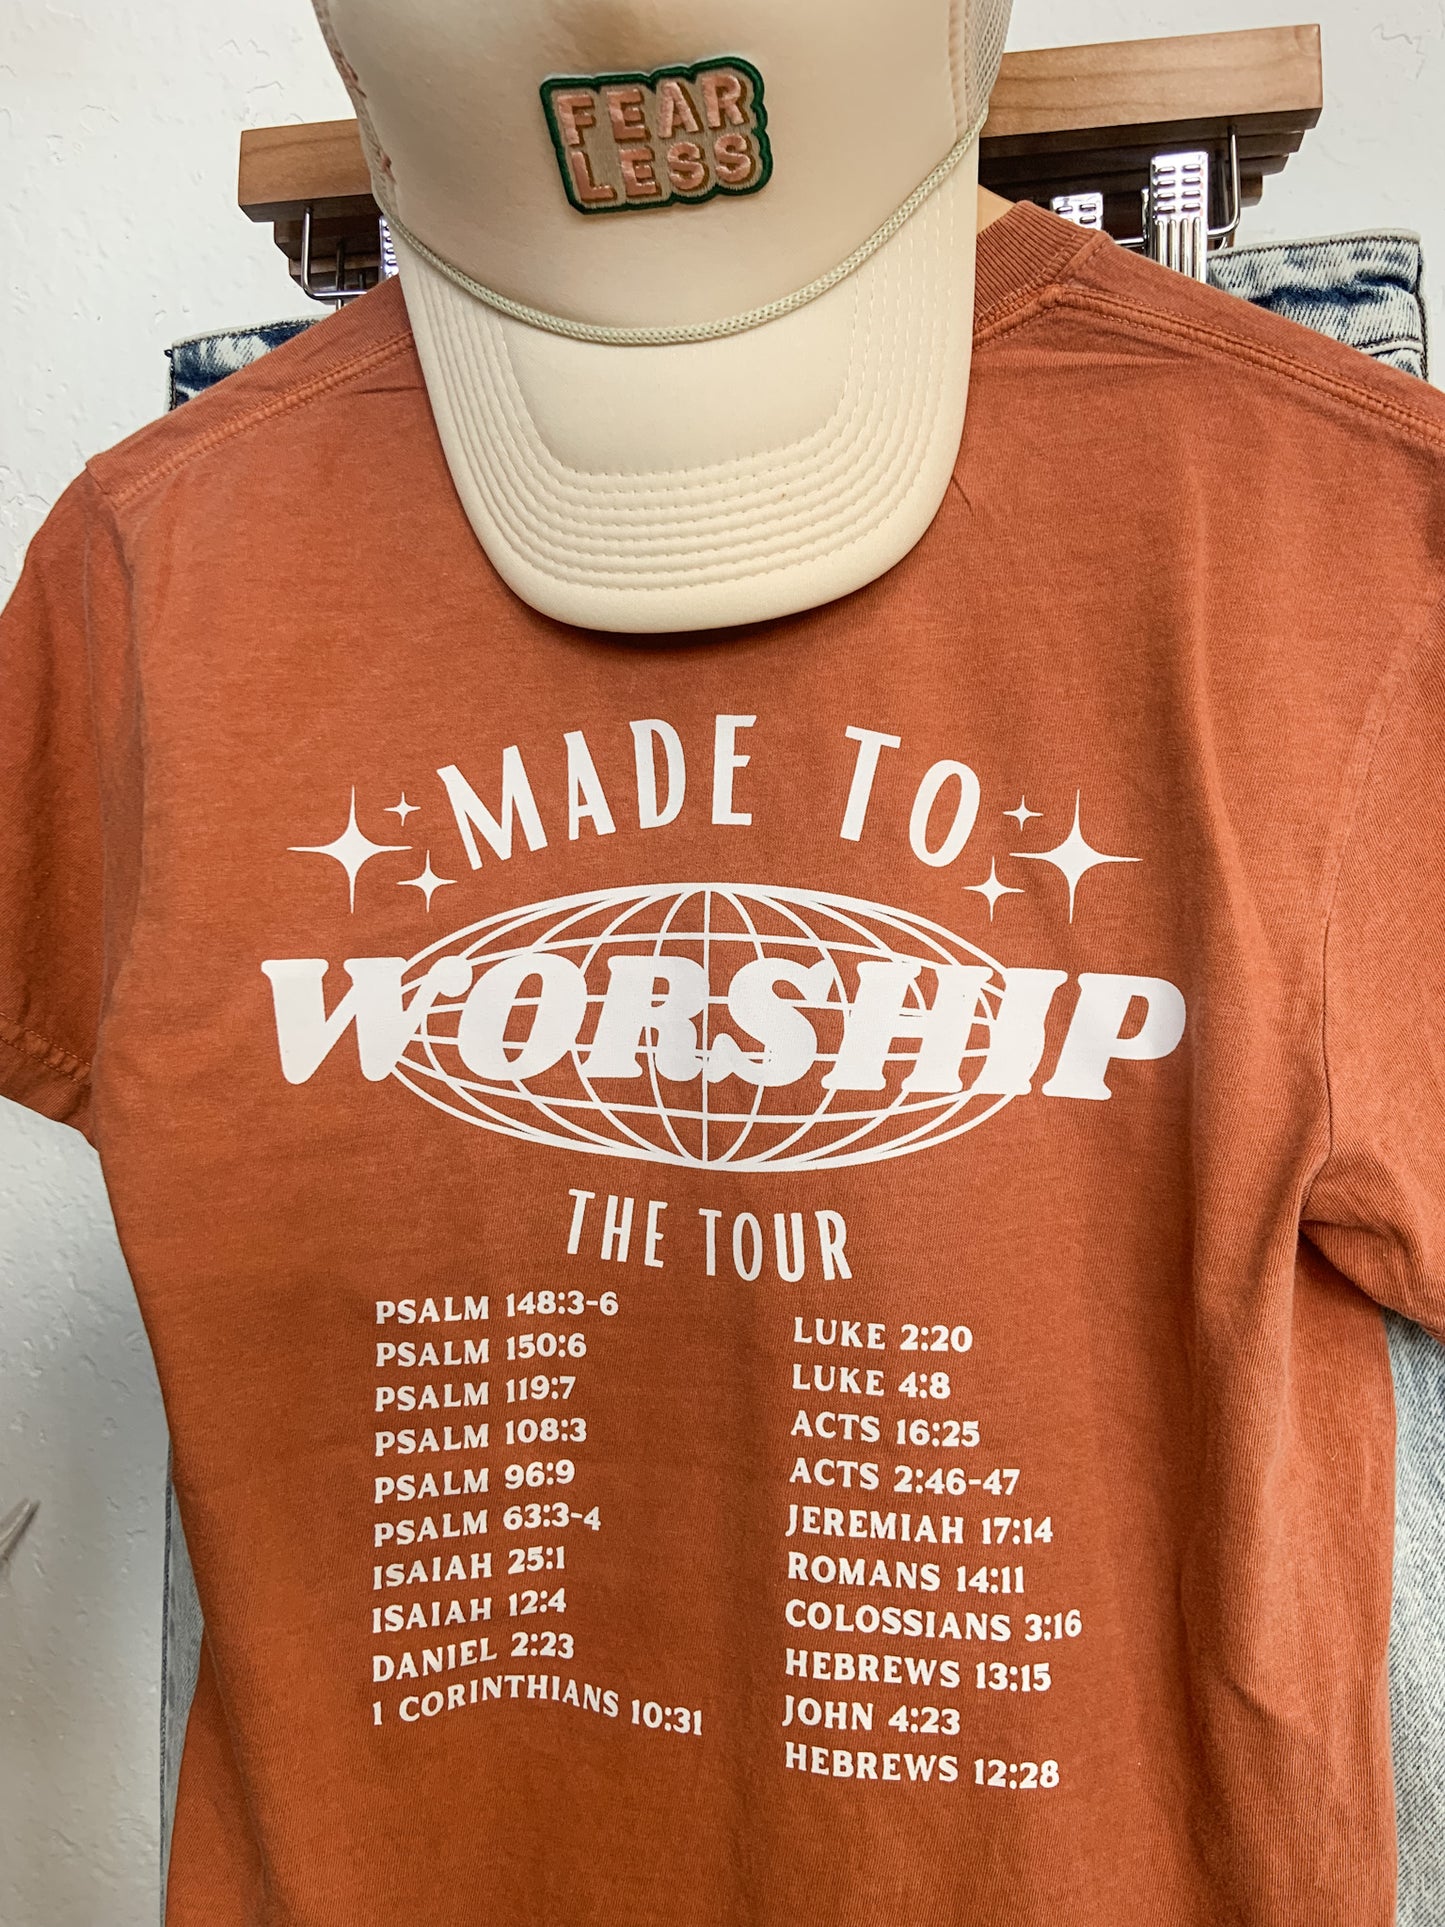 Made to Worship Tour Tee